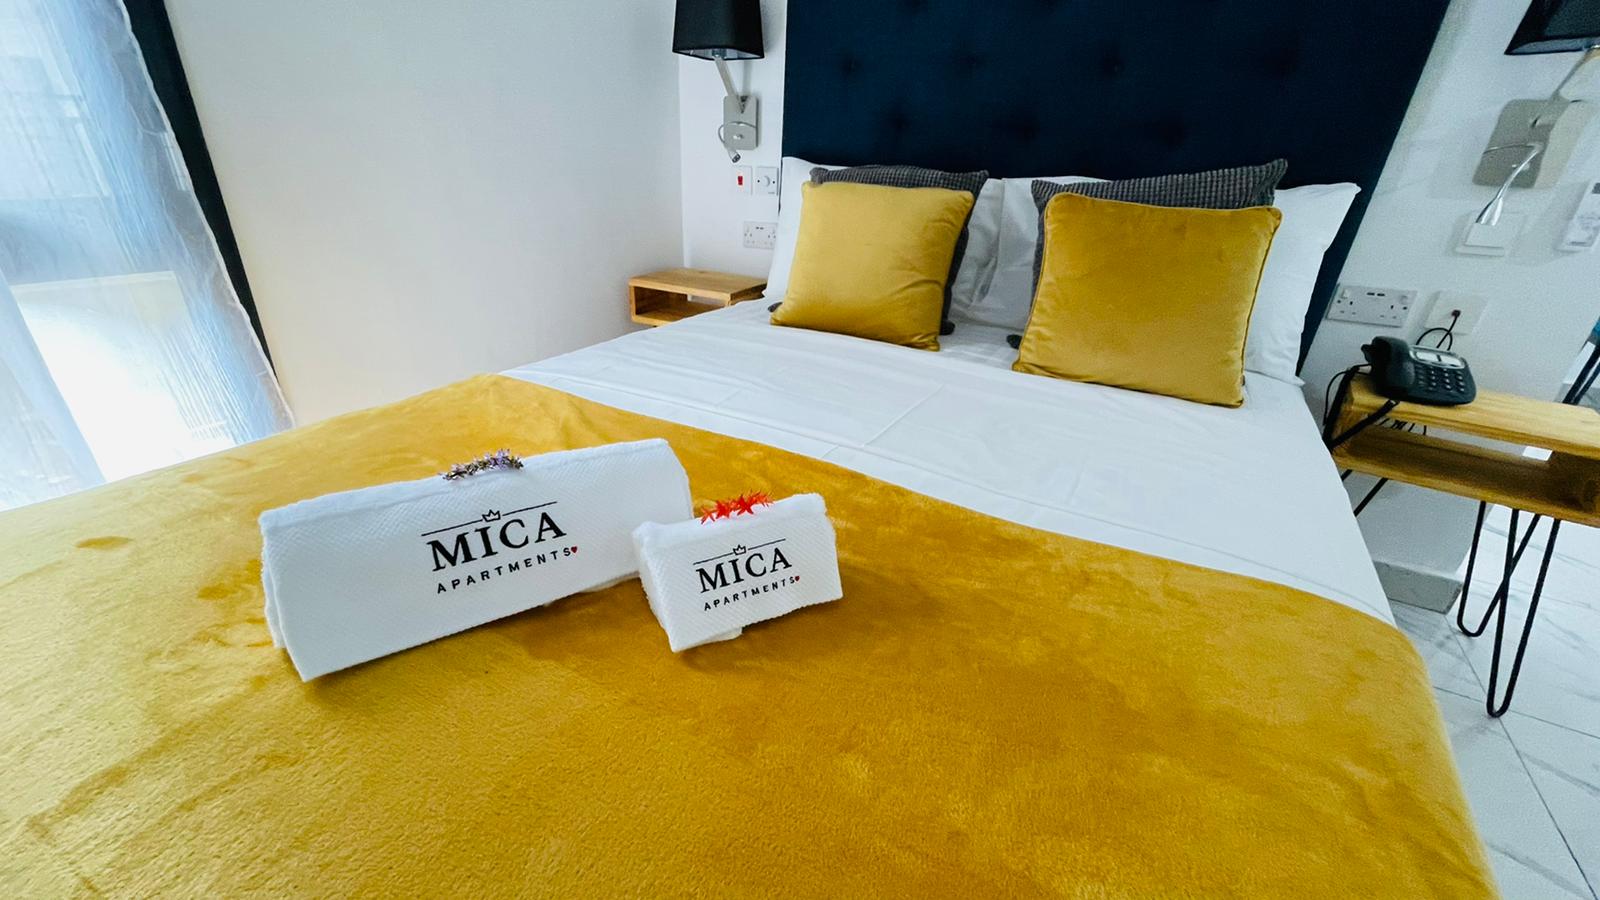 MicaBed - Empfehlung: Weihnachtsurlaub in GAMBIA 2021/22: Das gut ausgestattete niegelnagelneue Appartment-Hotel 'Mica Apartments' liegt im Partyviertel von Senegambia und dennoch ruhig